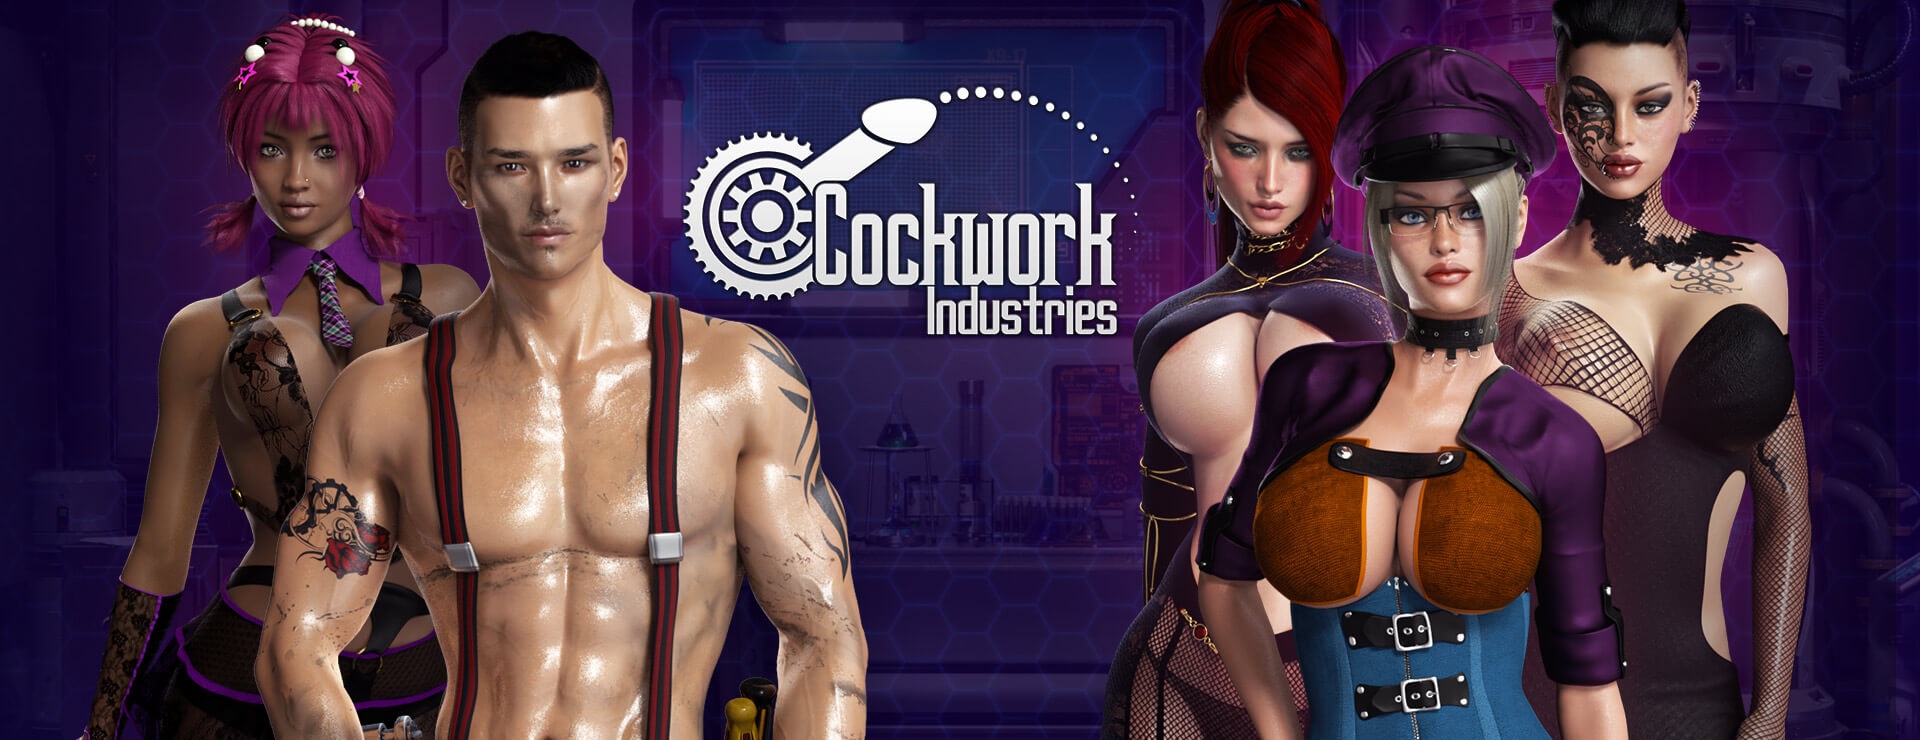 Cockwork Industries - Przygodowa akcji Gra